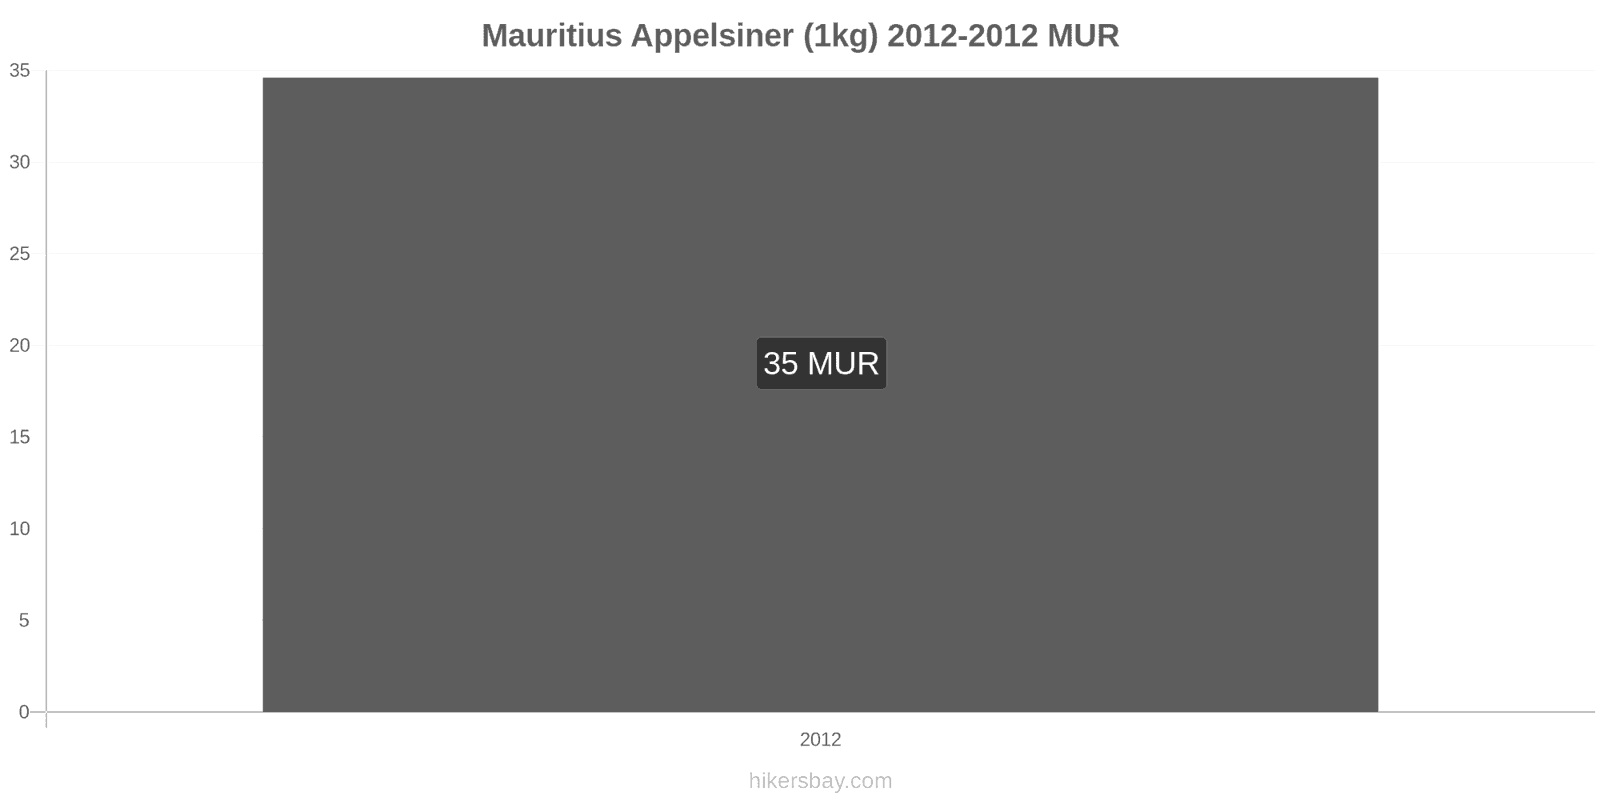 Mauritius prisændringer Appelsiner (1kg) hikersbay.com